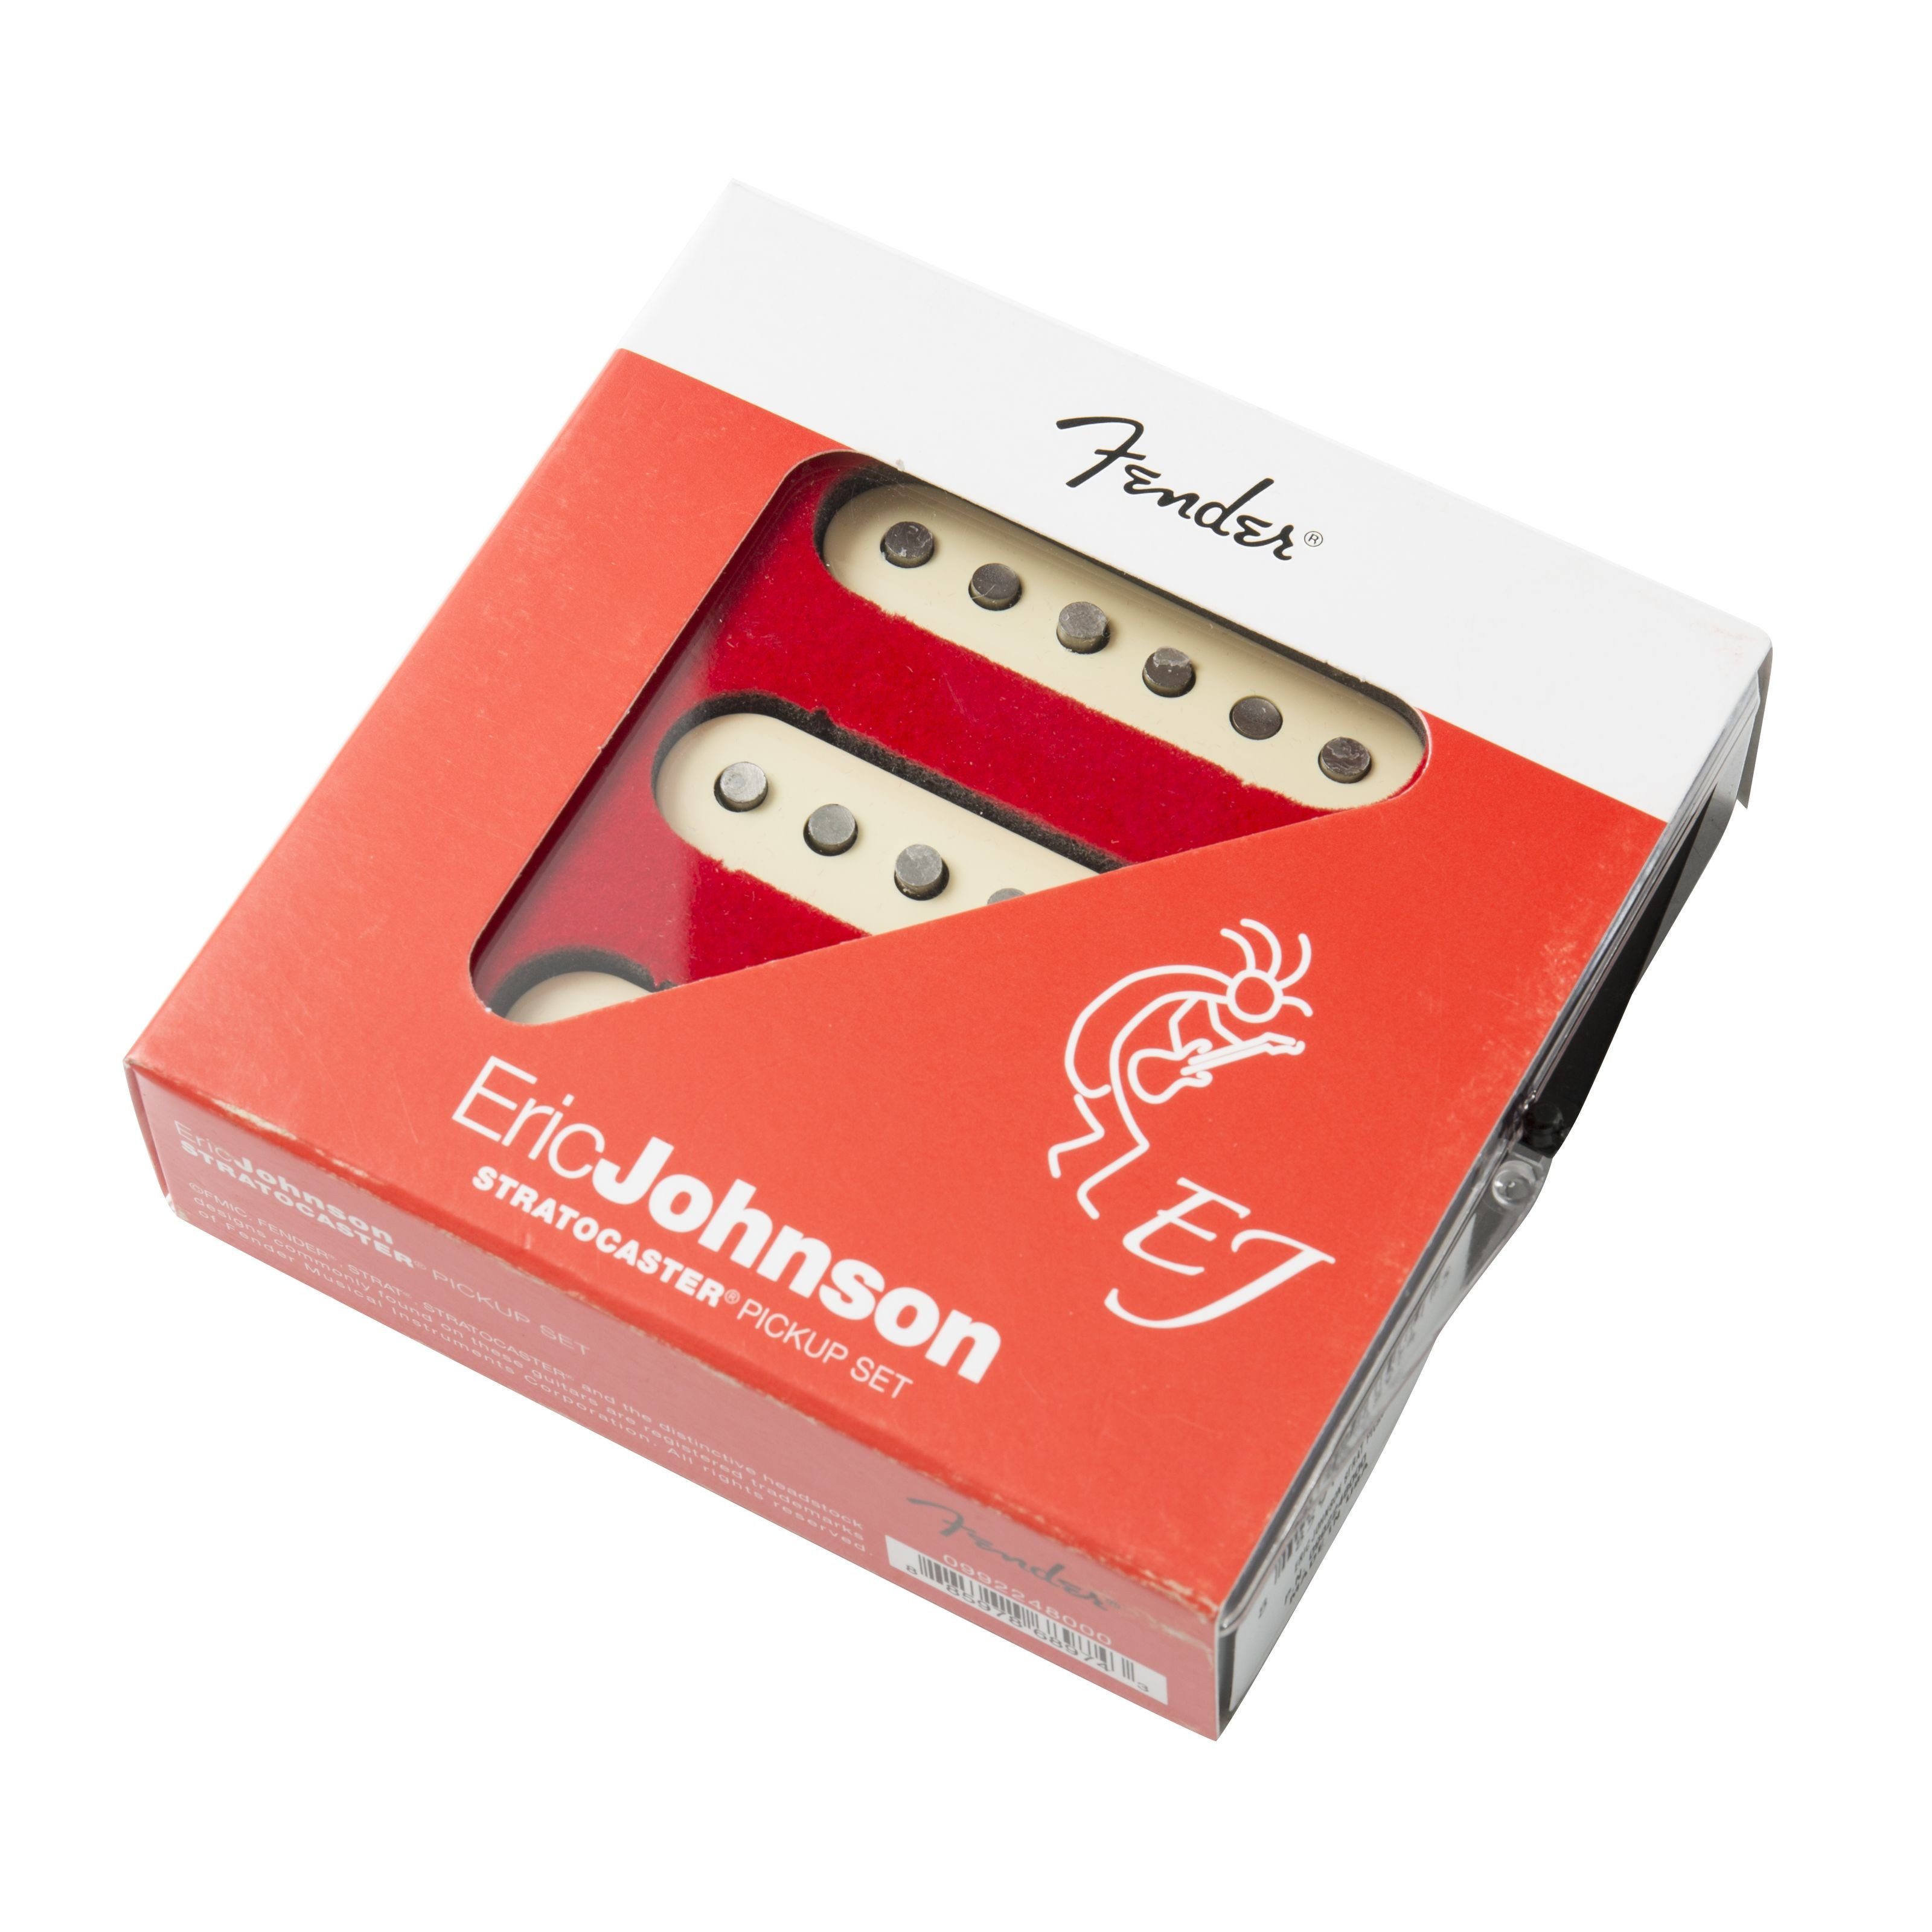 Fender Tonabnehmer, (Eric Johnson Pickup Set), Eric Johnson Pickup Set - Single Coil Tonabnehmer für Gitarren